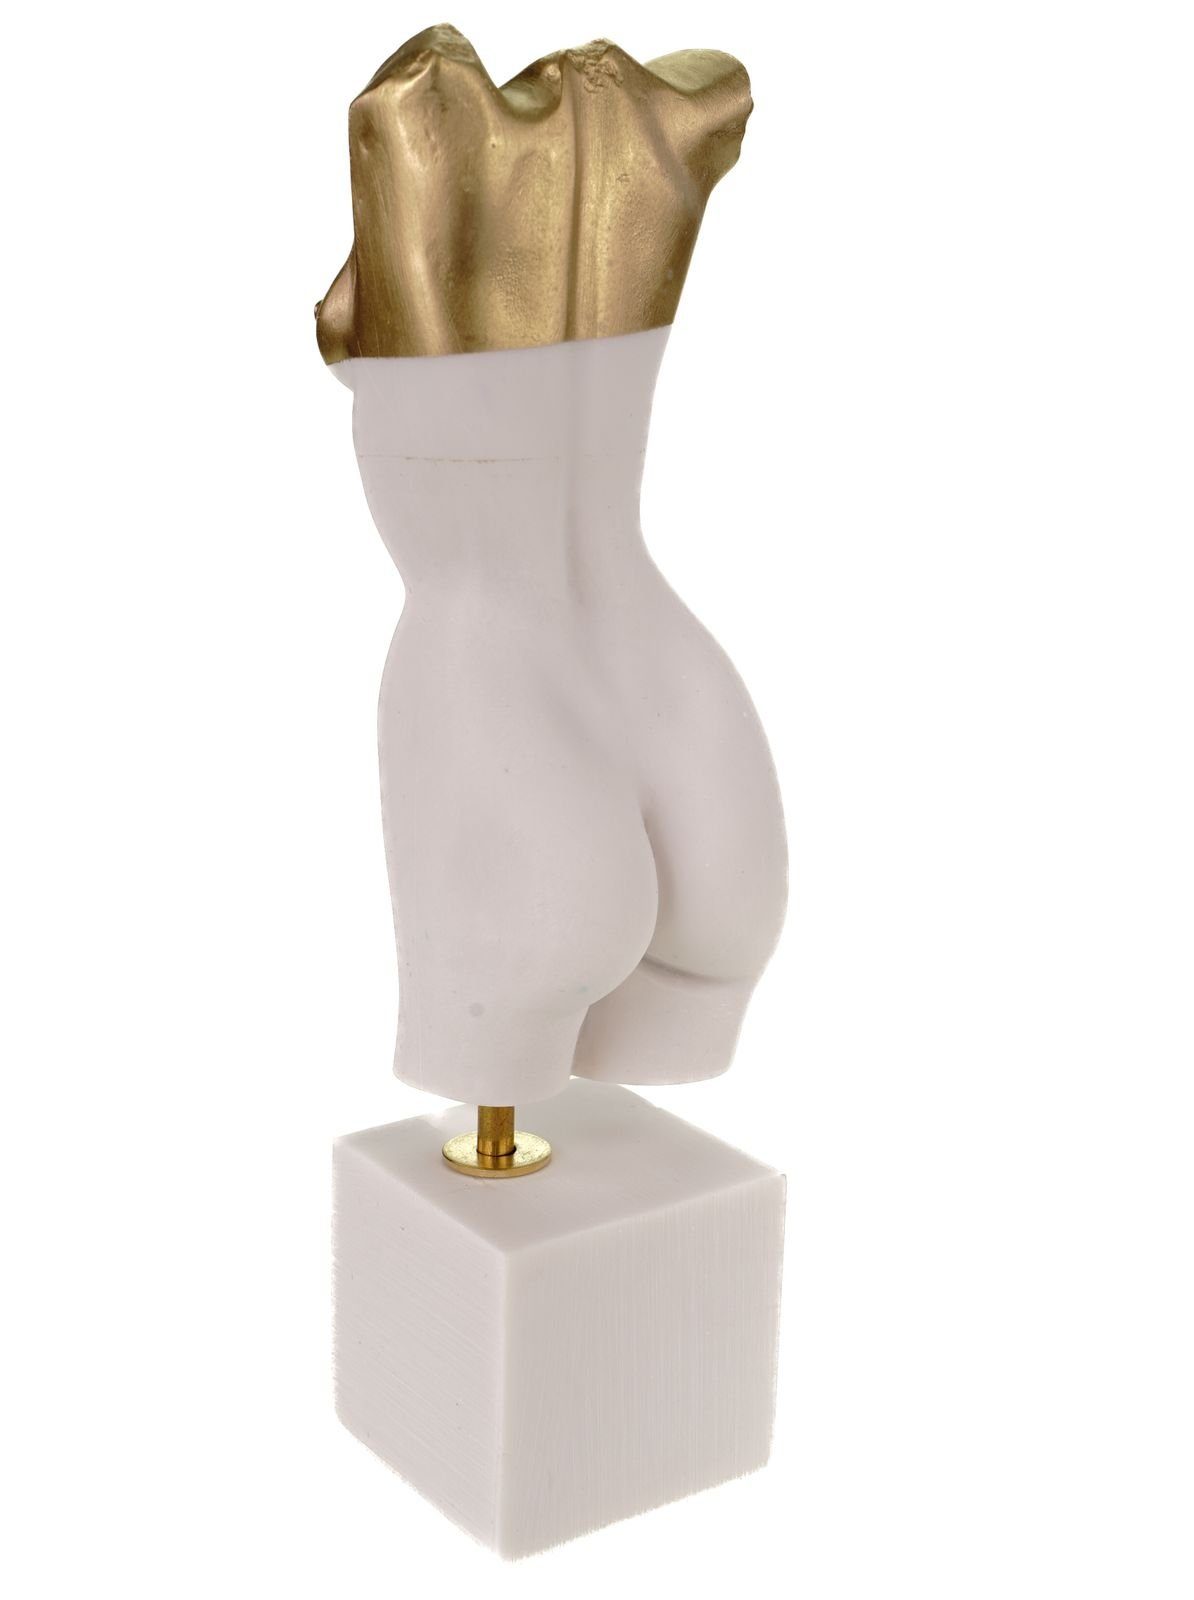 Kremers Schatzkiste Dekofigur Hingabe Liebe 24 cm Figurine Skulptur Alabaster Kunst Frauentorso weiß/gold Art Akt